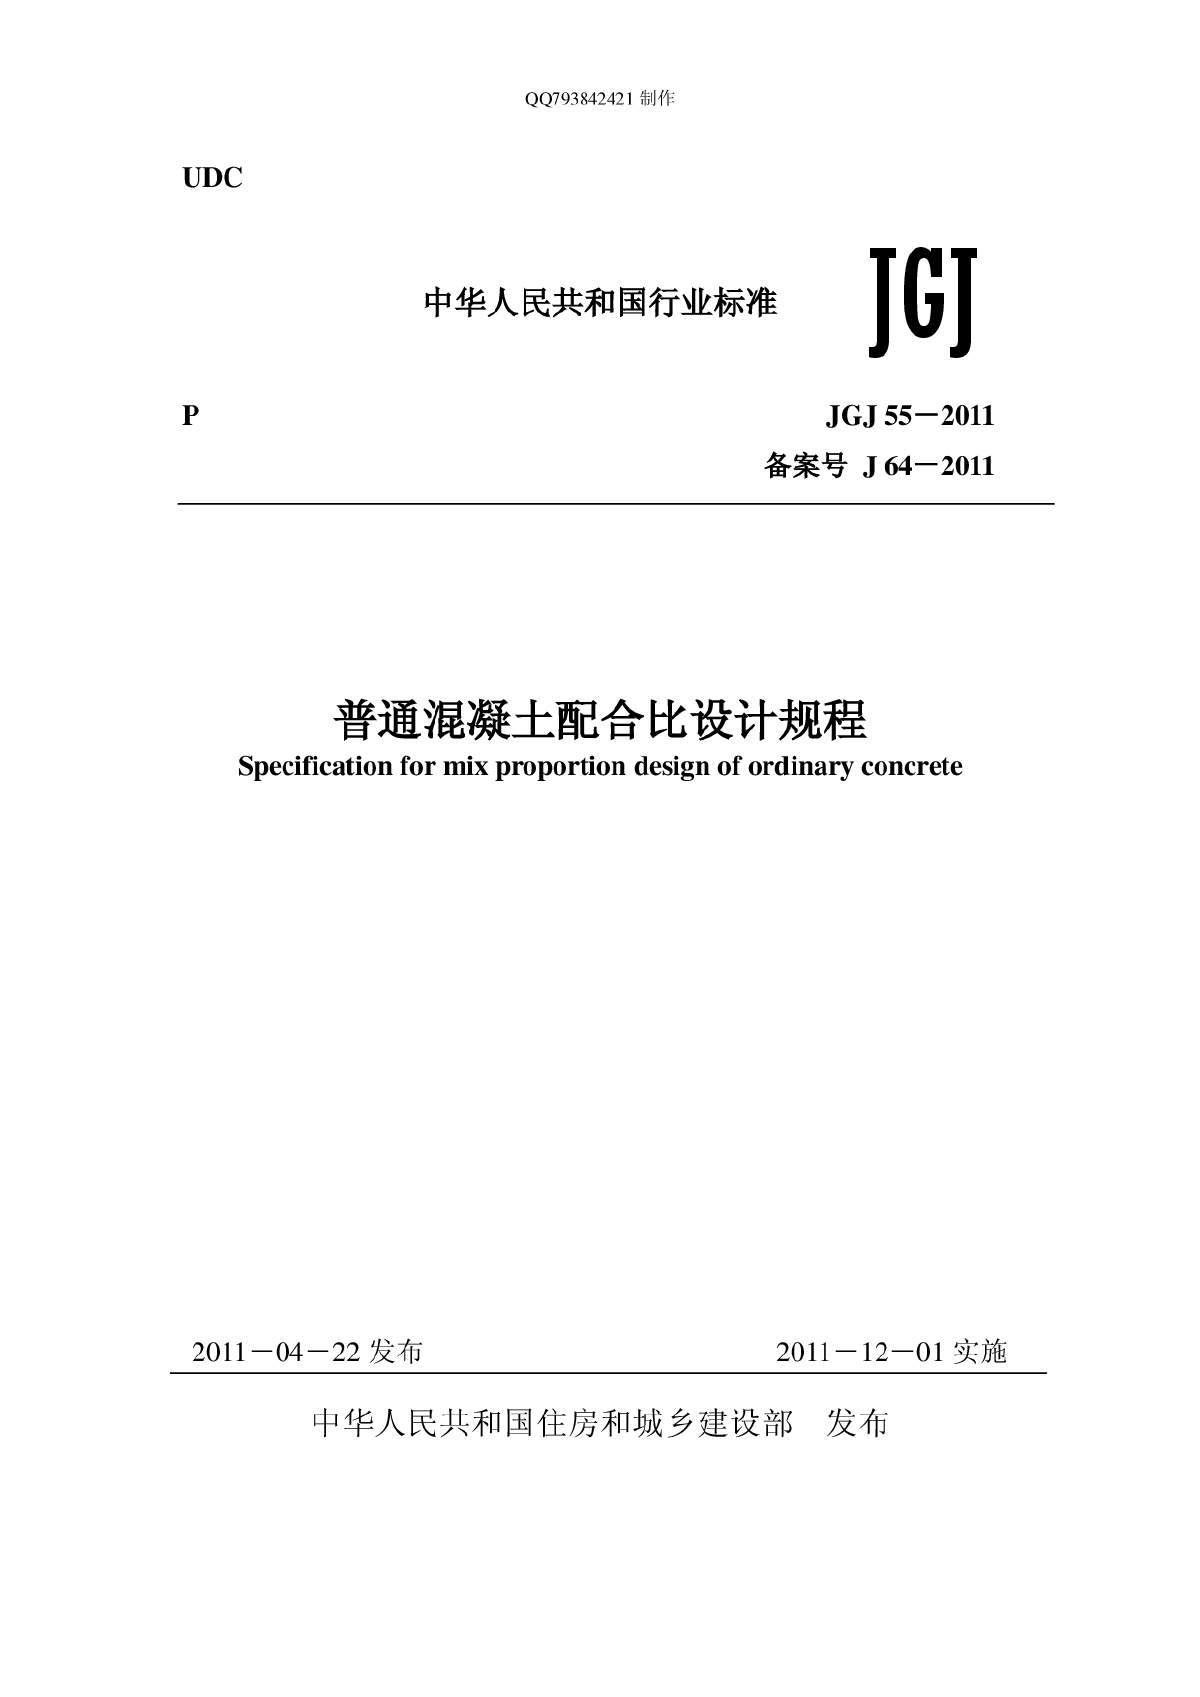 《普通混凝土配合比设计规程》JGJ55-2011正式版.pdf